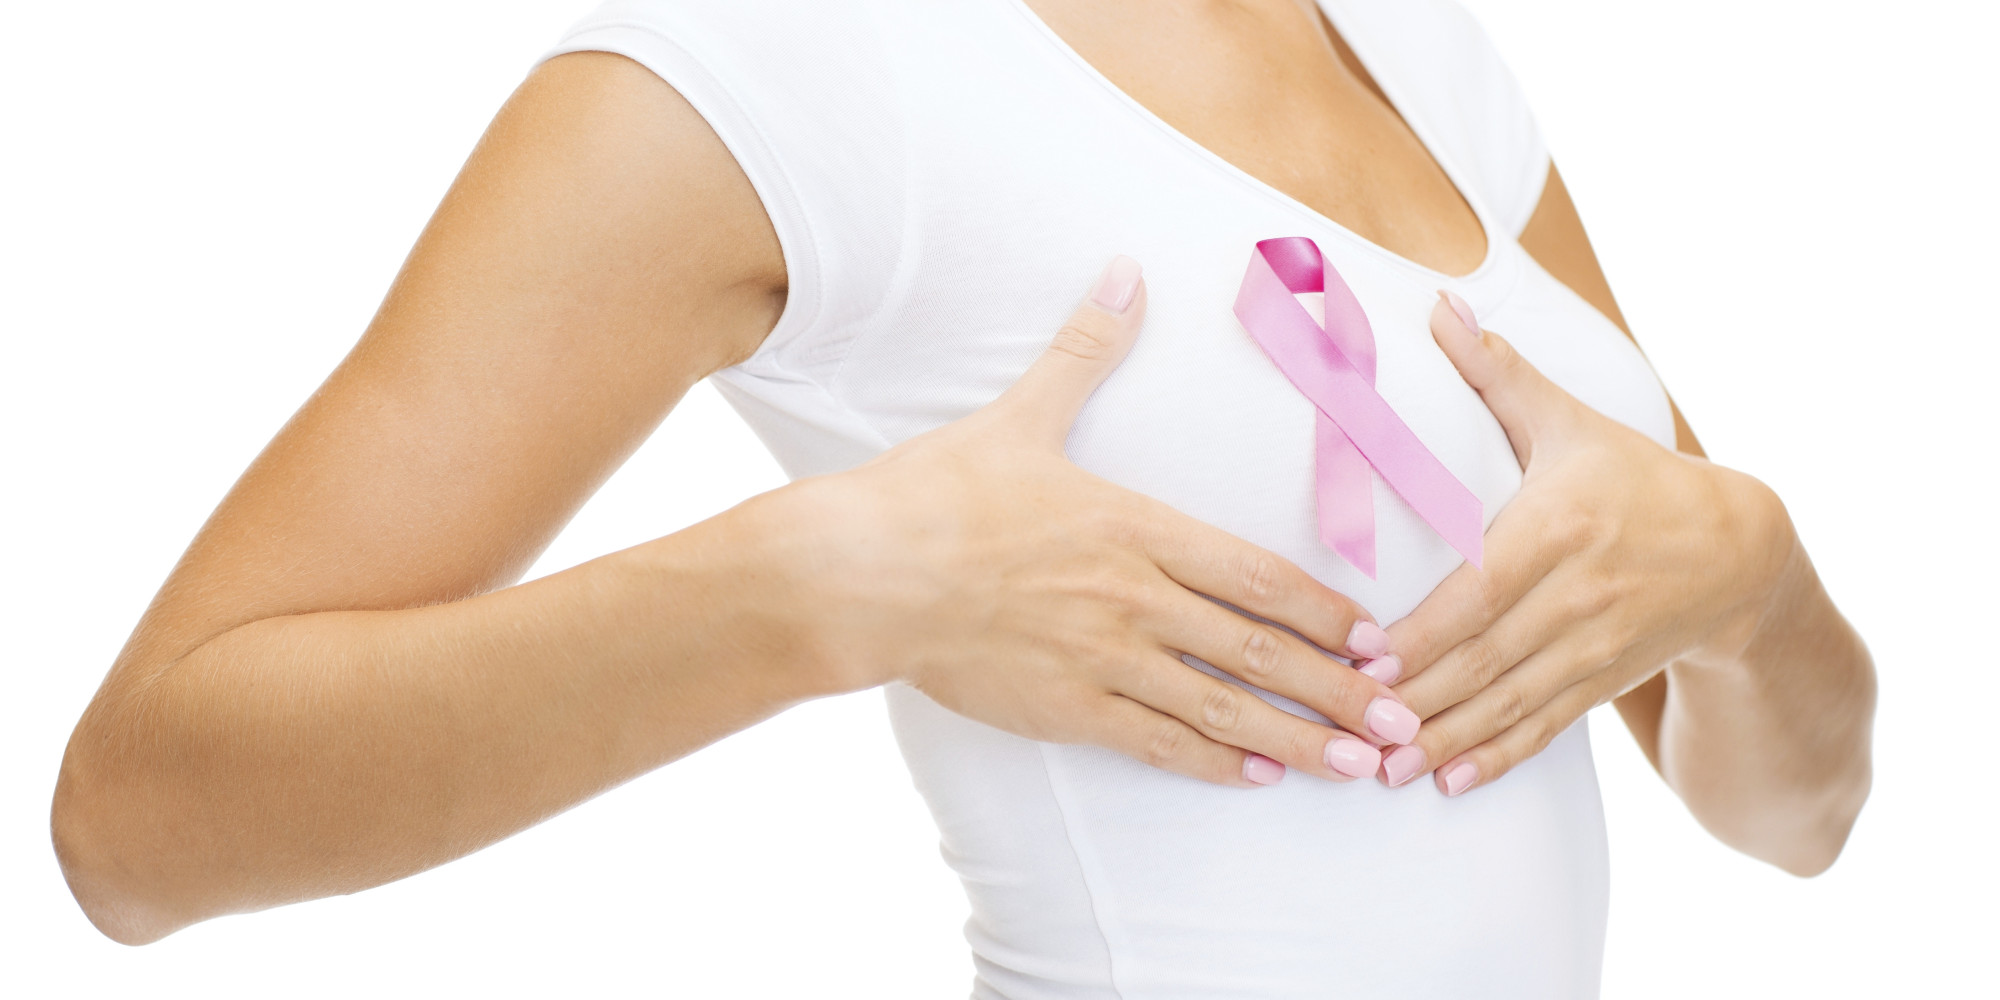   Ngoài khối u, người bị ung thư vú có thể sẽ thấy 8 dấu hiệu khác trên cơ thể  